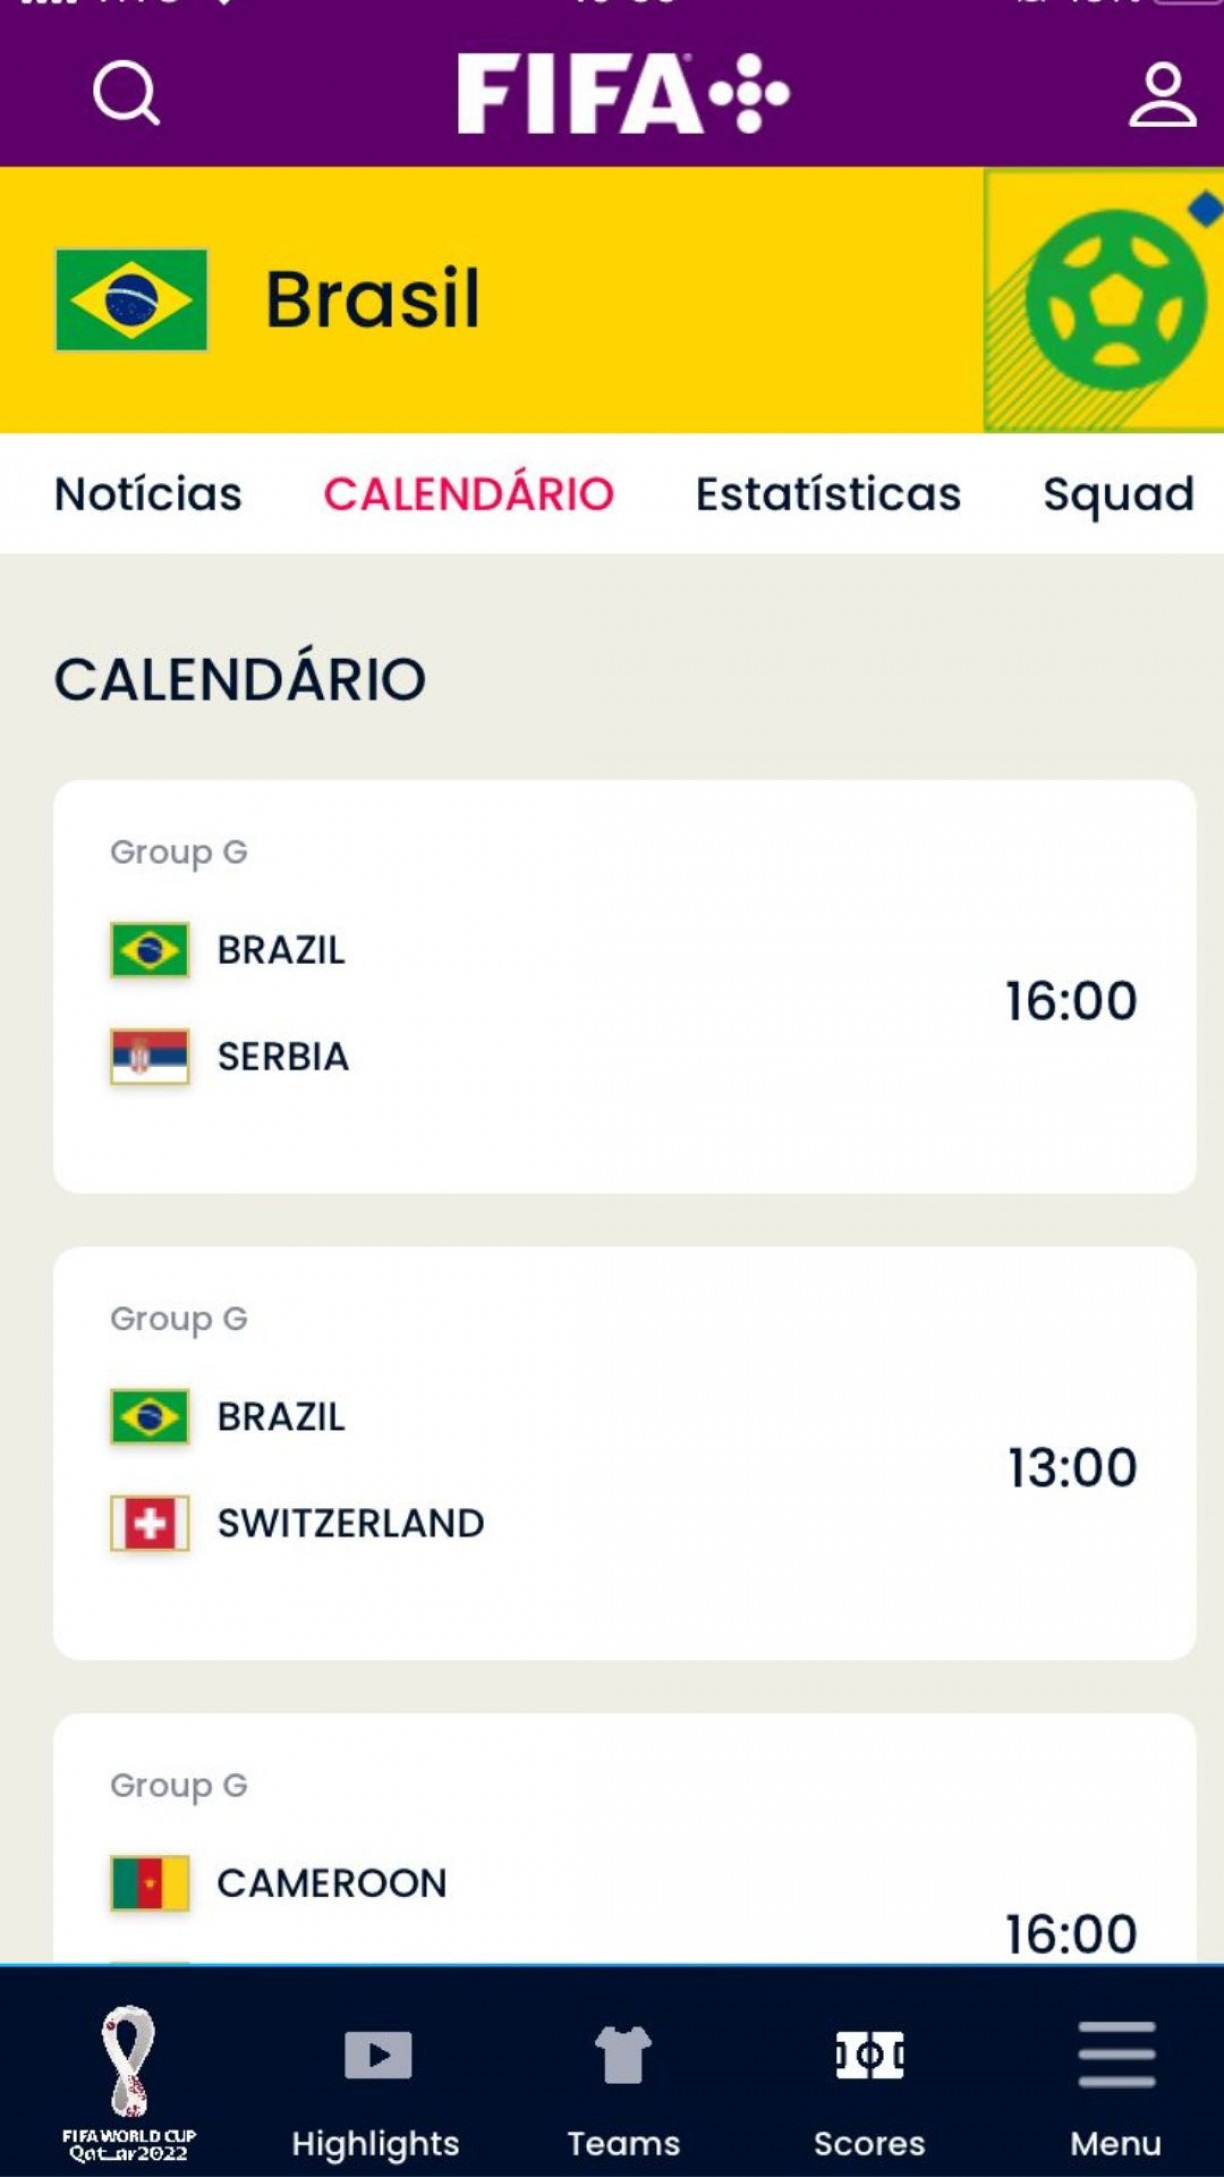 Hoje tem jogo da Copa do Mundo 2022? Veja tabela e calendário